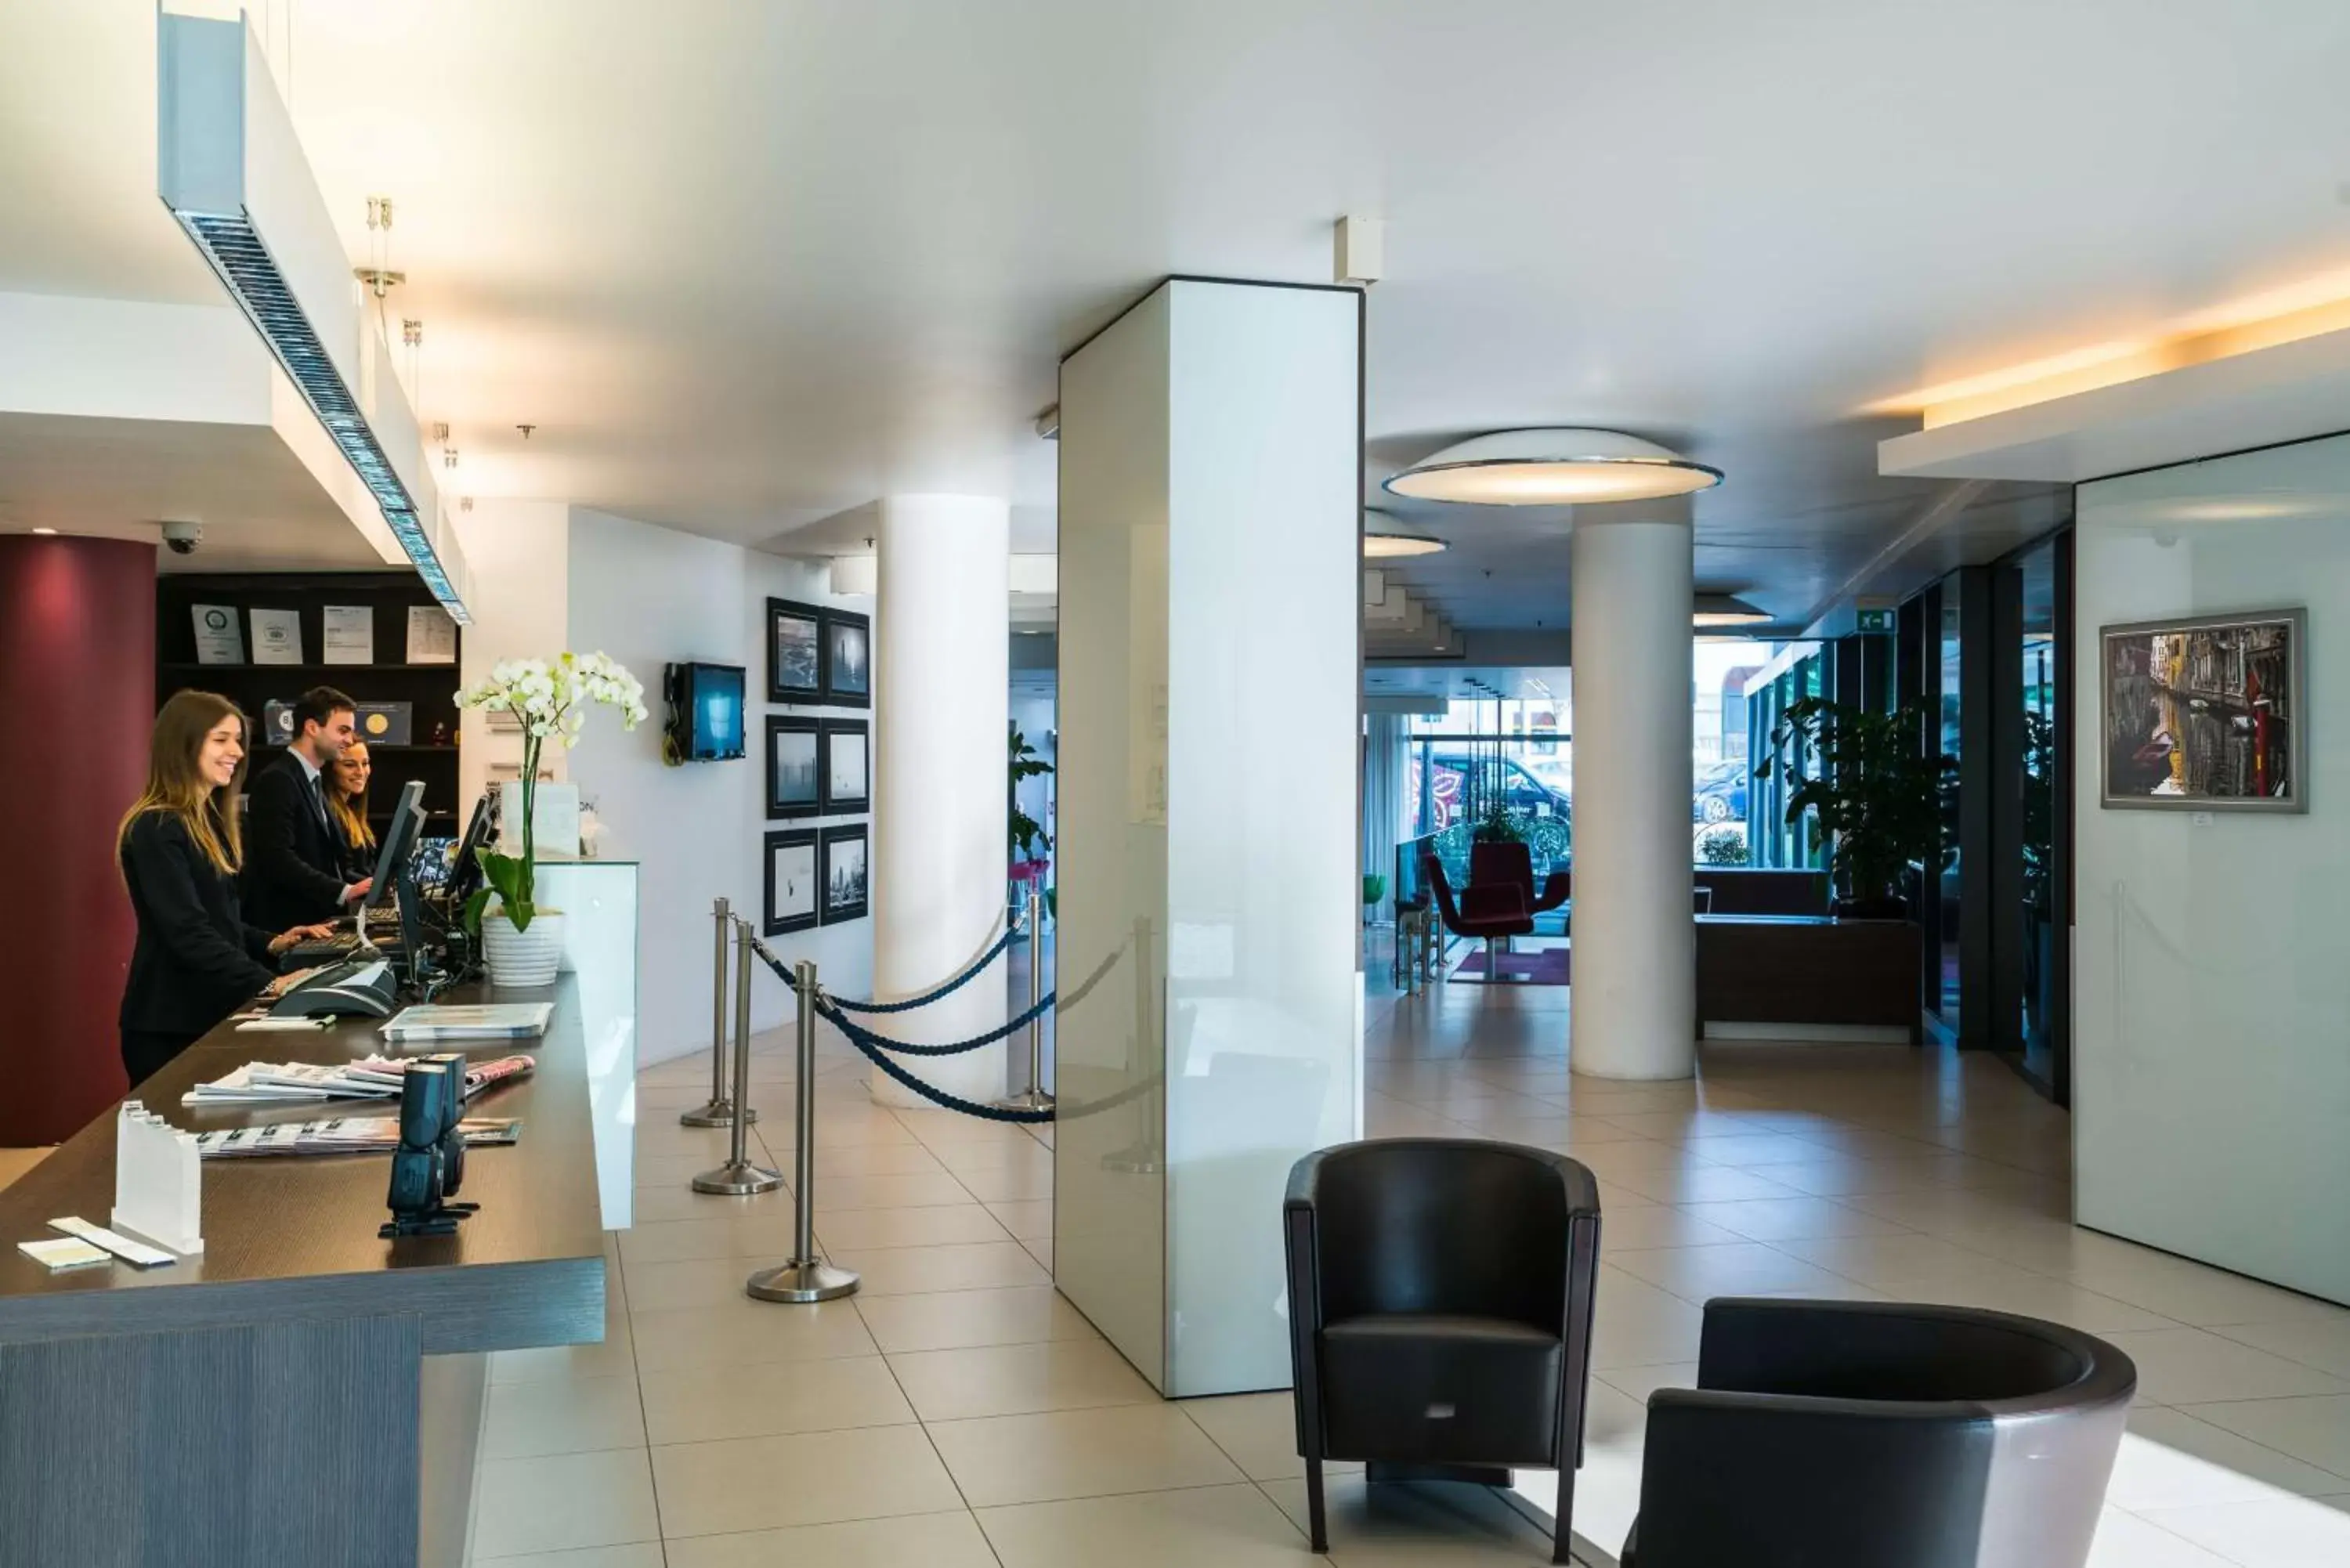 Lobby or reception, Lobby/Reception in Hilton Garden Inn Venice Mestre